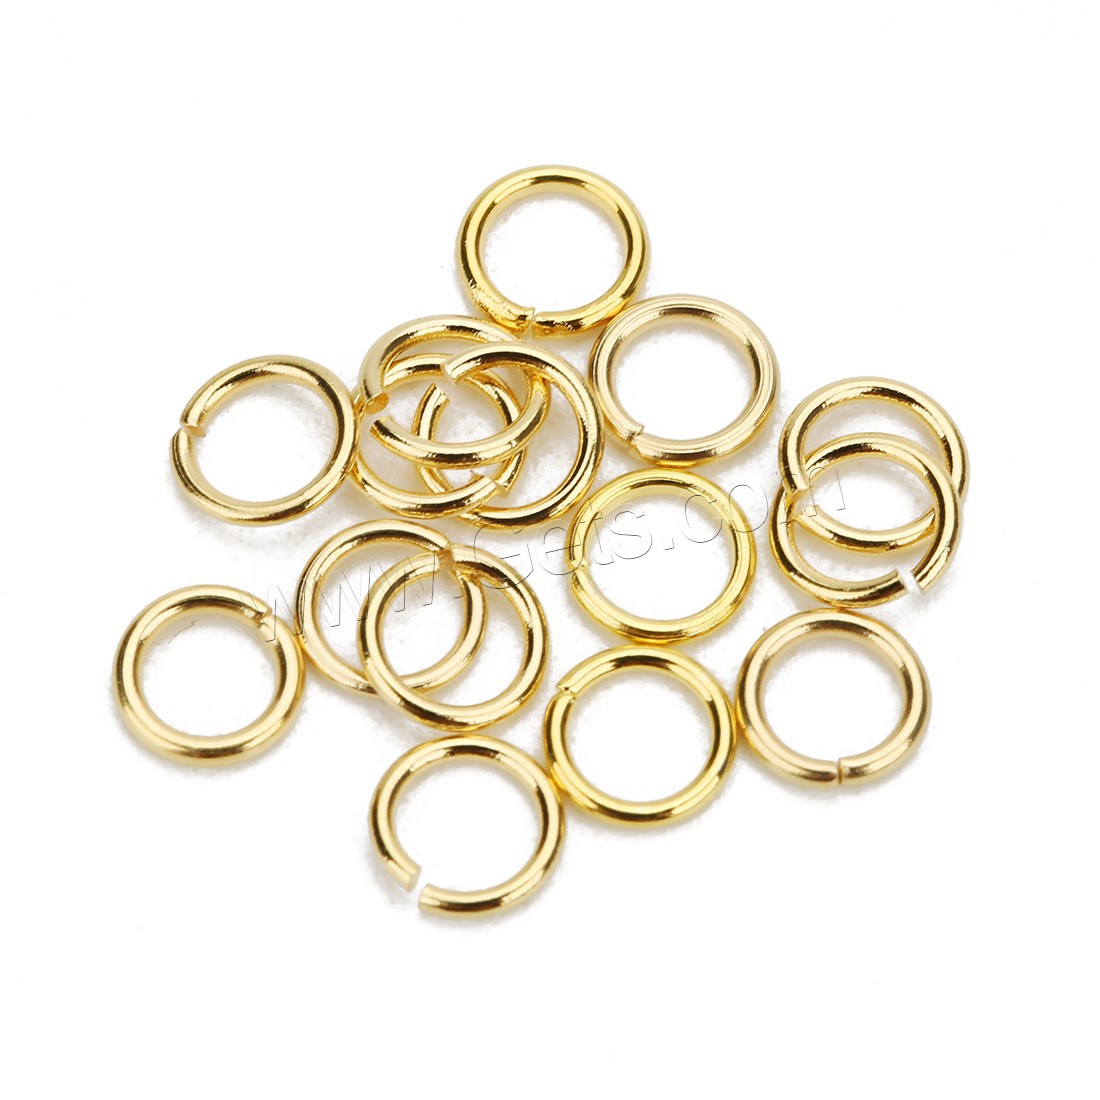 Sägeschnitt Edelstahl Closed Sprung-Ring, verschiedene Größen vorhanden, Goldfarbe, 100PC/Tasche, verkauft von Tasche